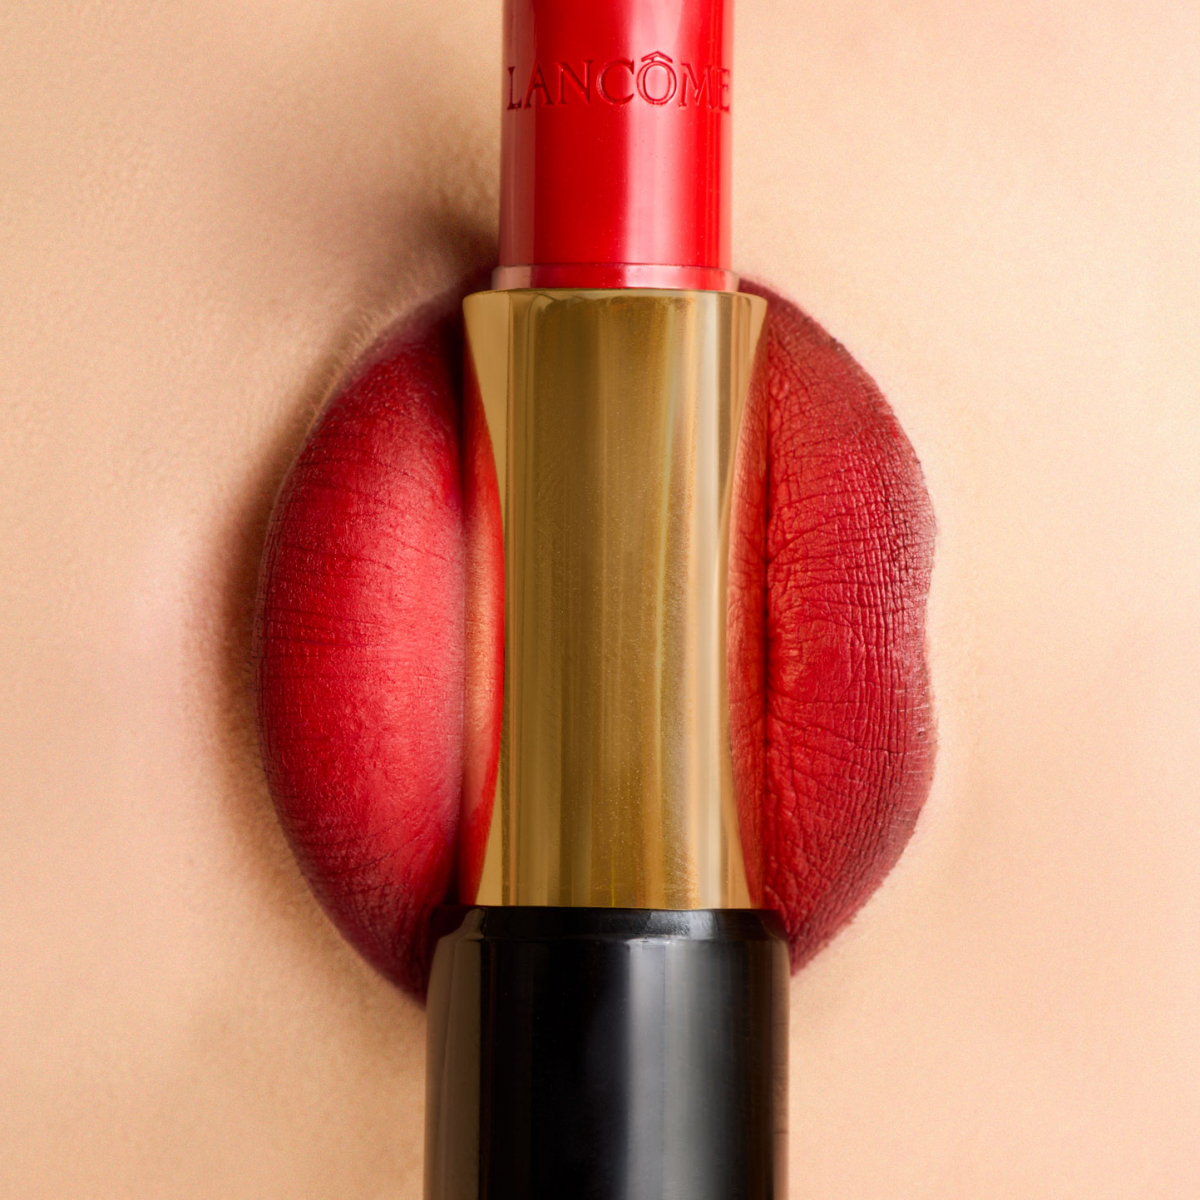 ce rouge à lèvres Lancôme incarne la quintessence du glamour. Sa teinte éclatante se marie parfaitement avec la beauté naturelle des lèvres